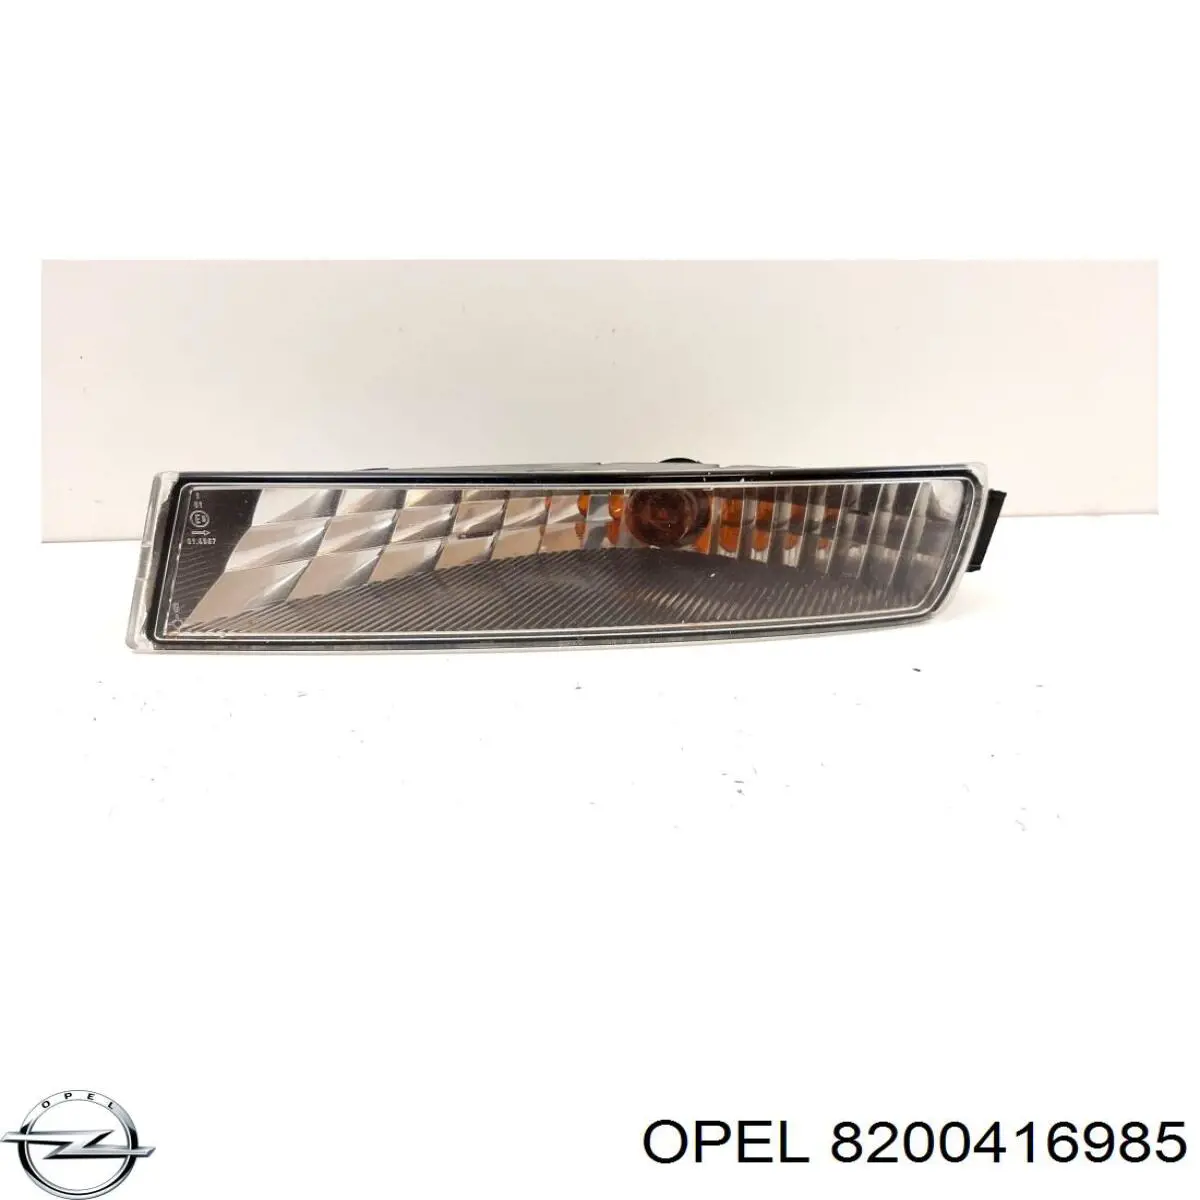 8200416985 Opel указатель поворота левый